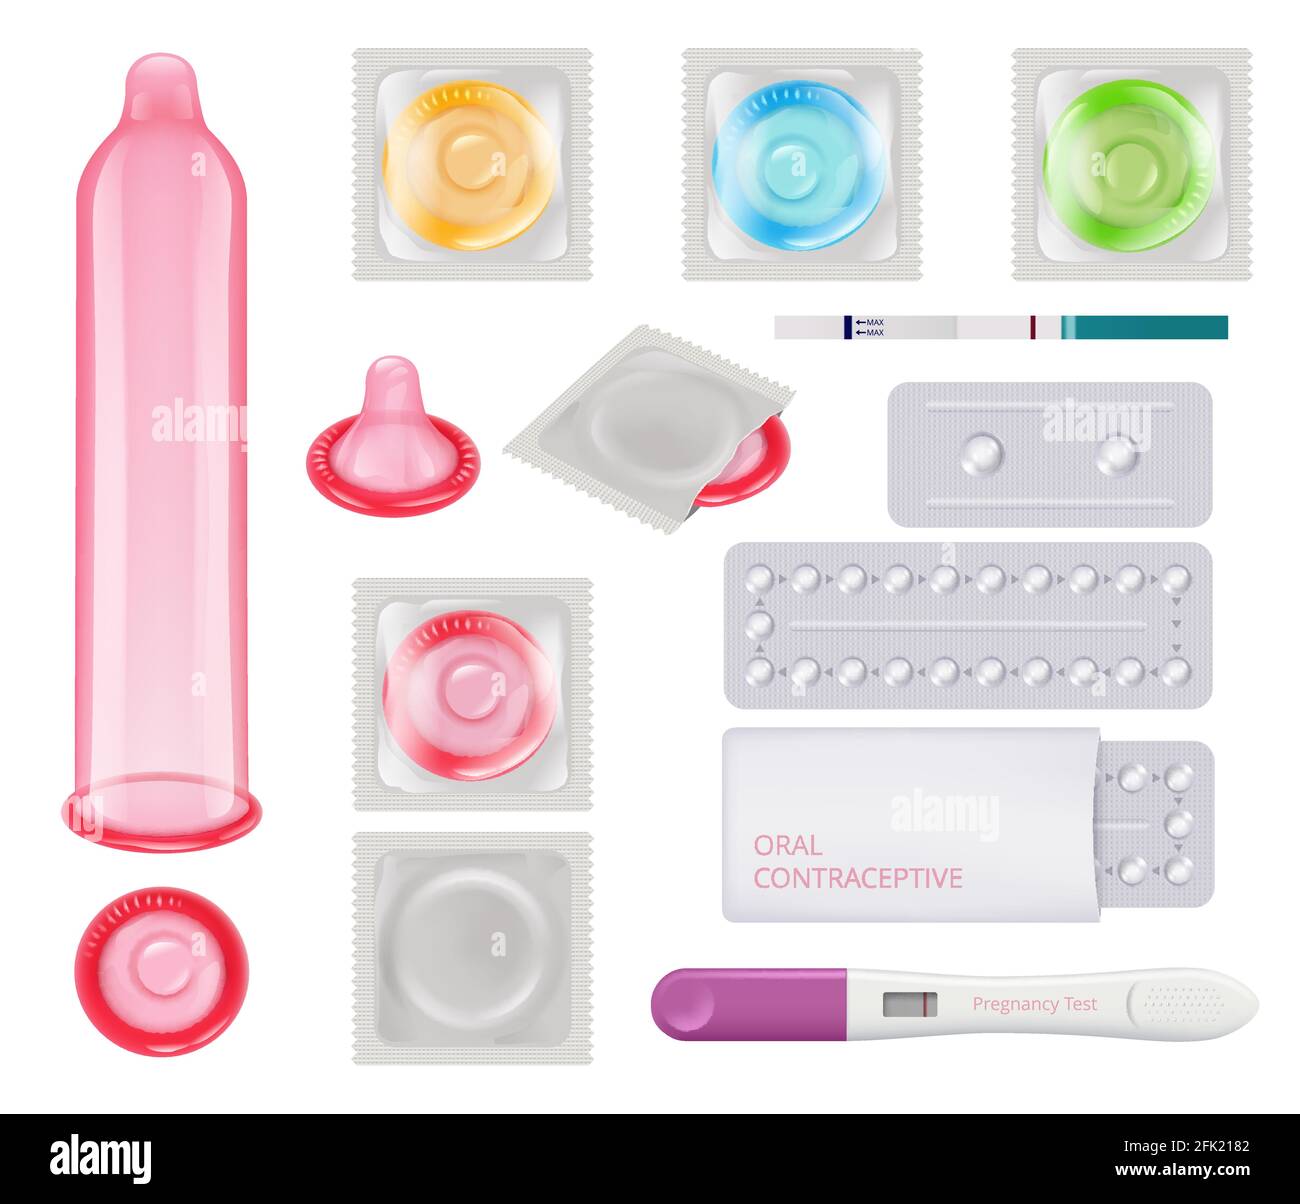 Verhütungsmittel. Kondome weibliche Schwangerschaft Test Eisprung Kalender Pillen Verhütungsmethoden Vektor realistische Bilder Stock Vektor